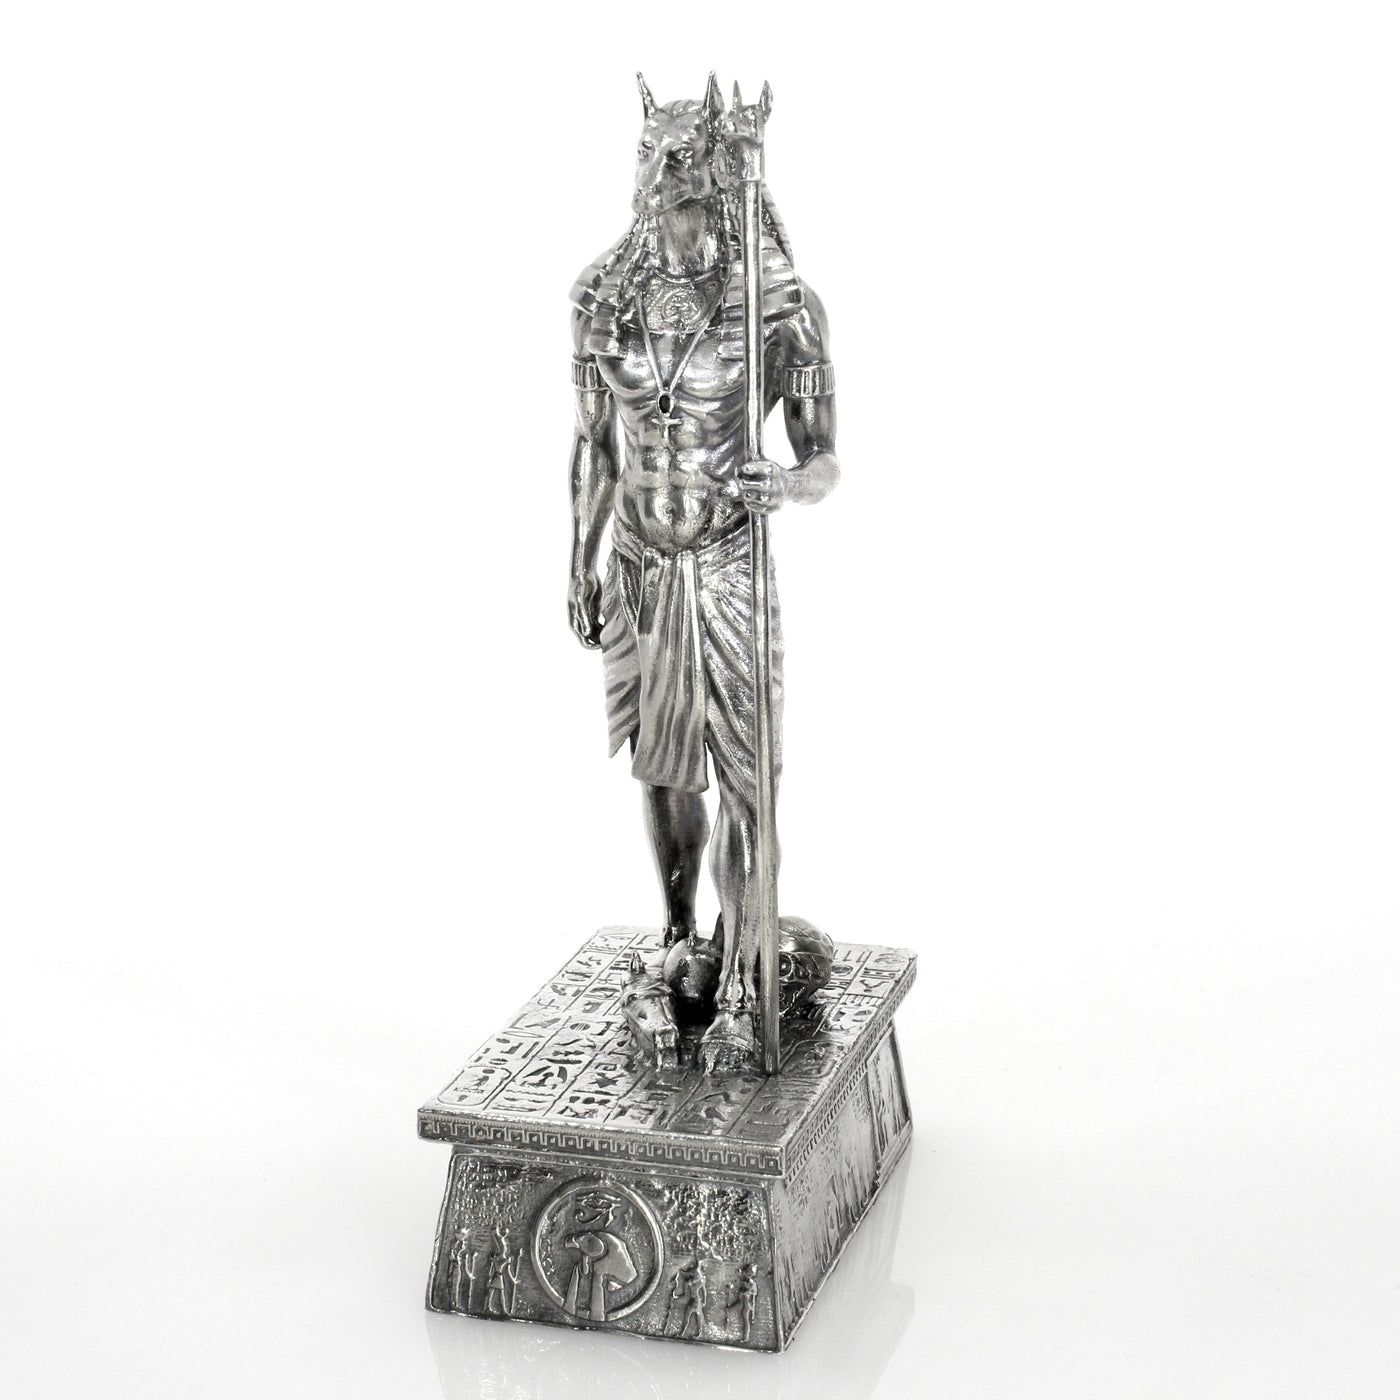 Anubis XL: God of the Underworld - SilverStatues.com